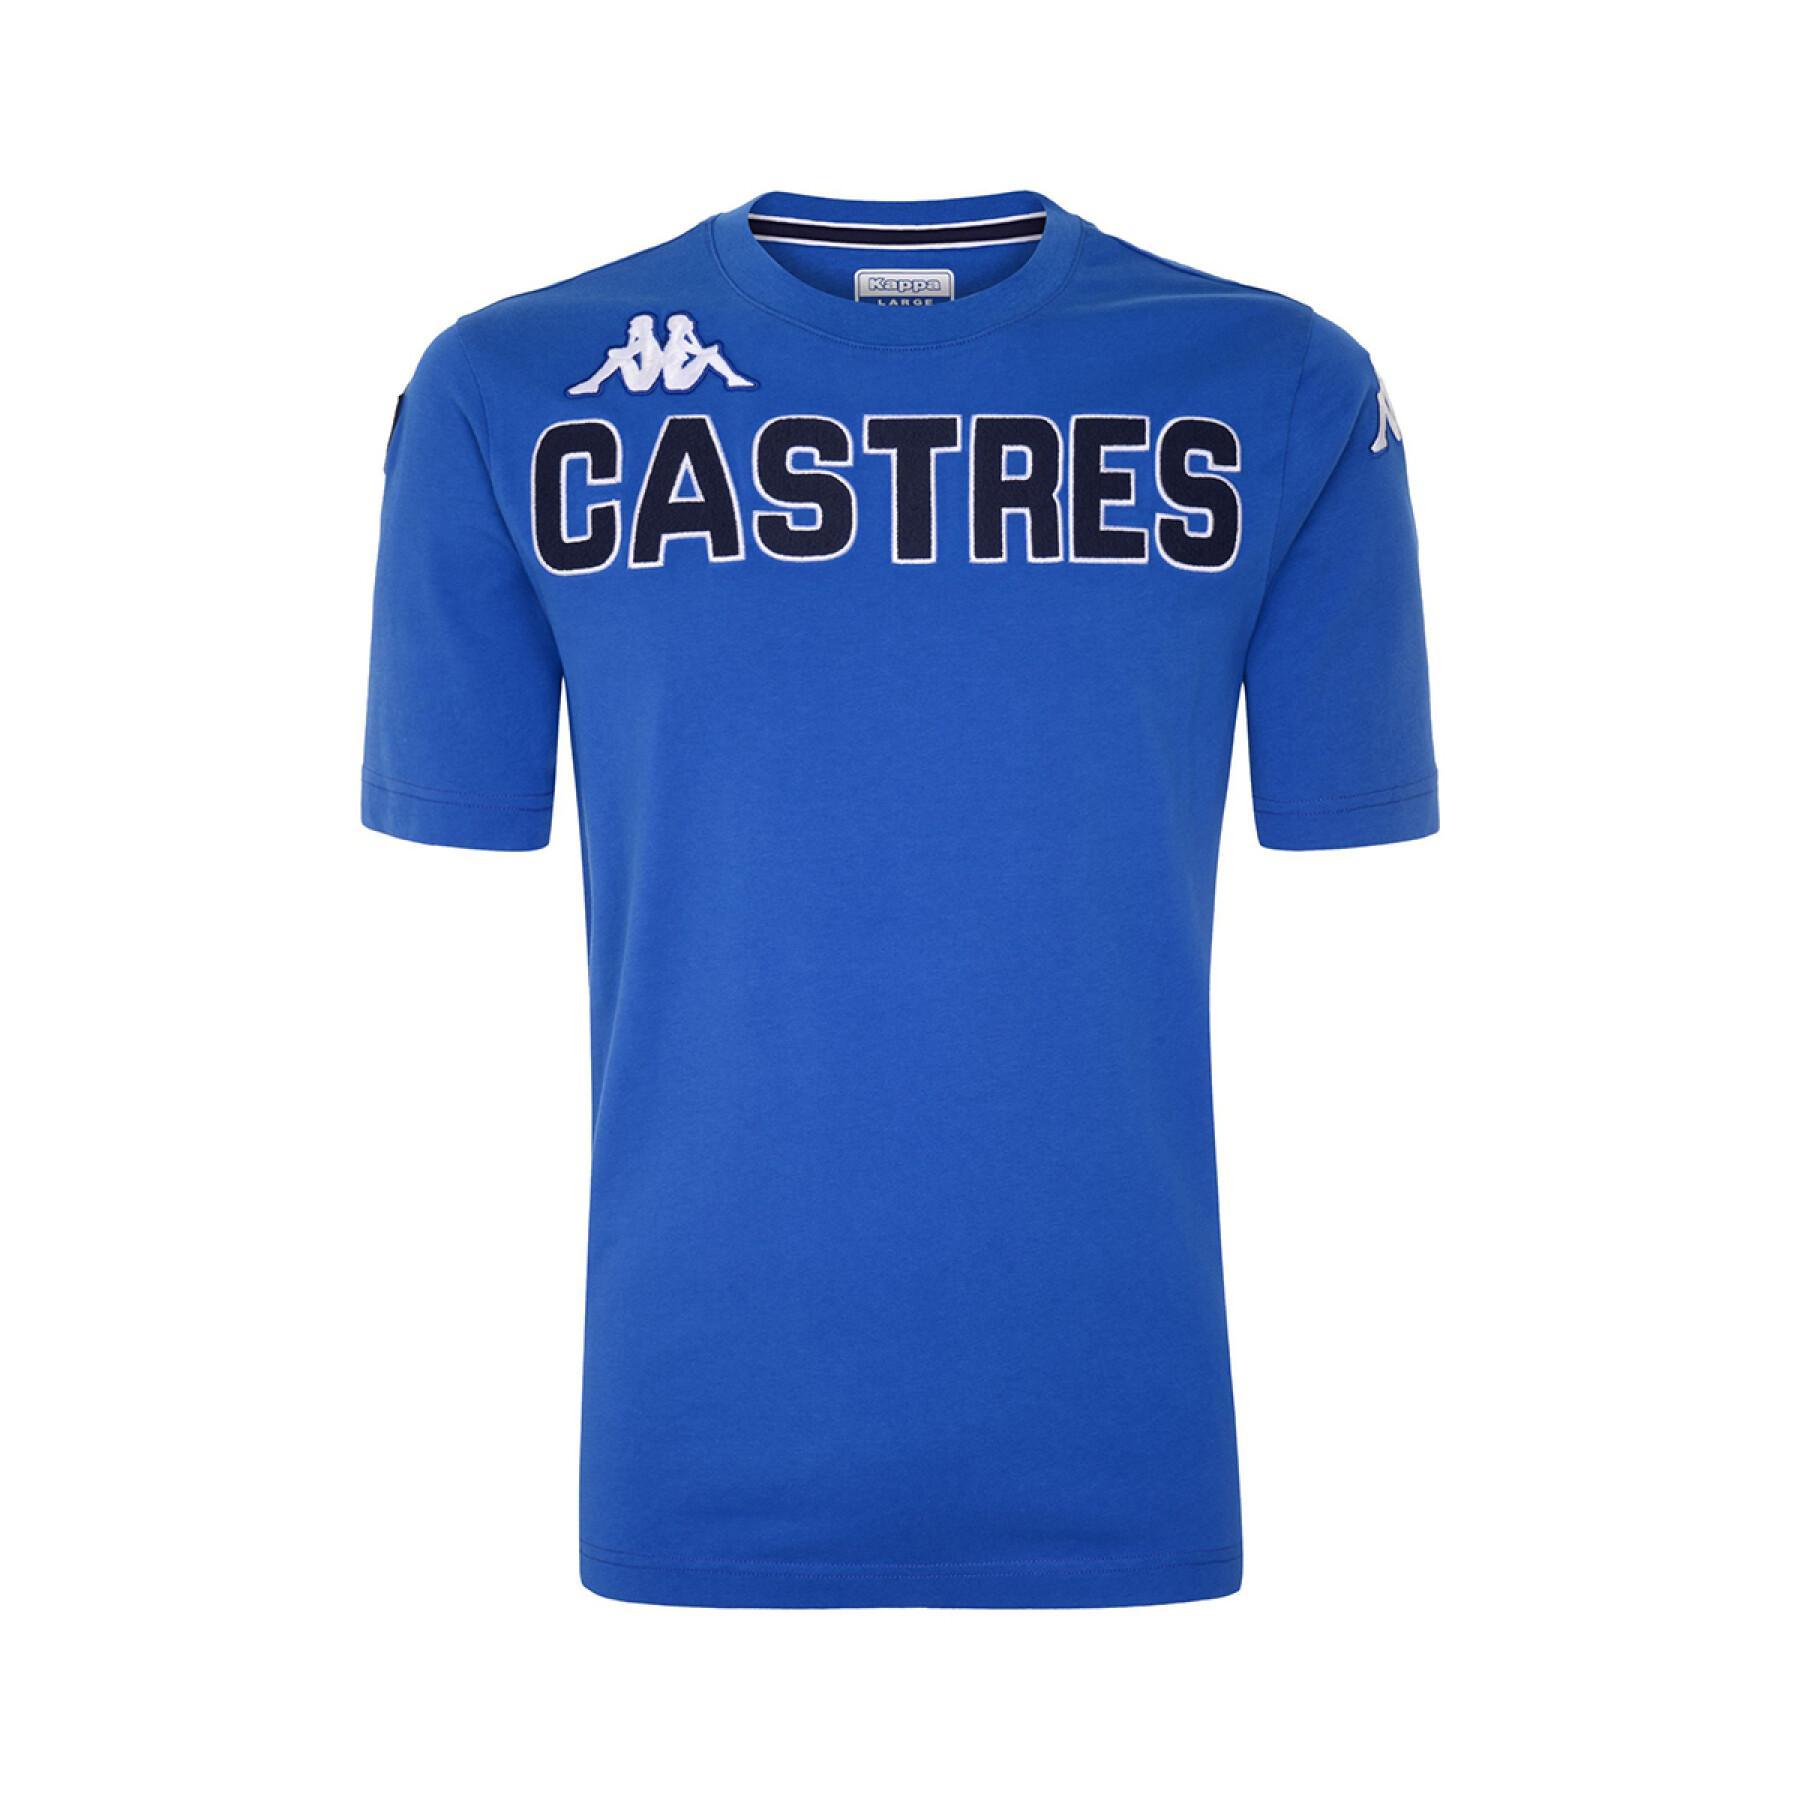 T-shirt de criança Castres Olympique 2021/22 eroi